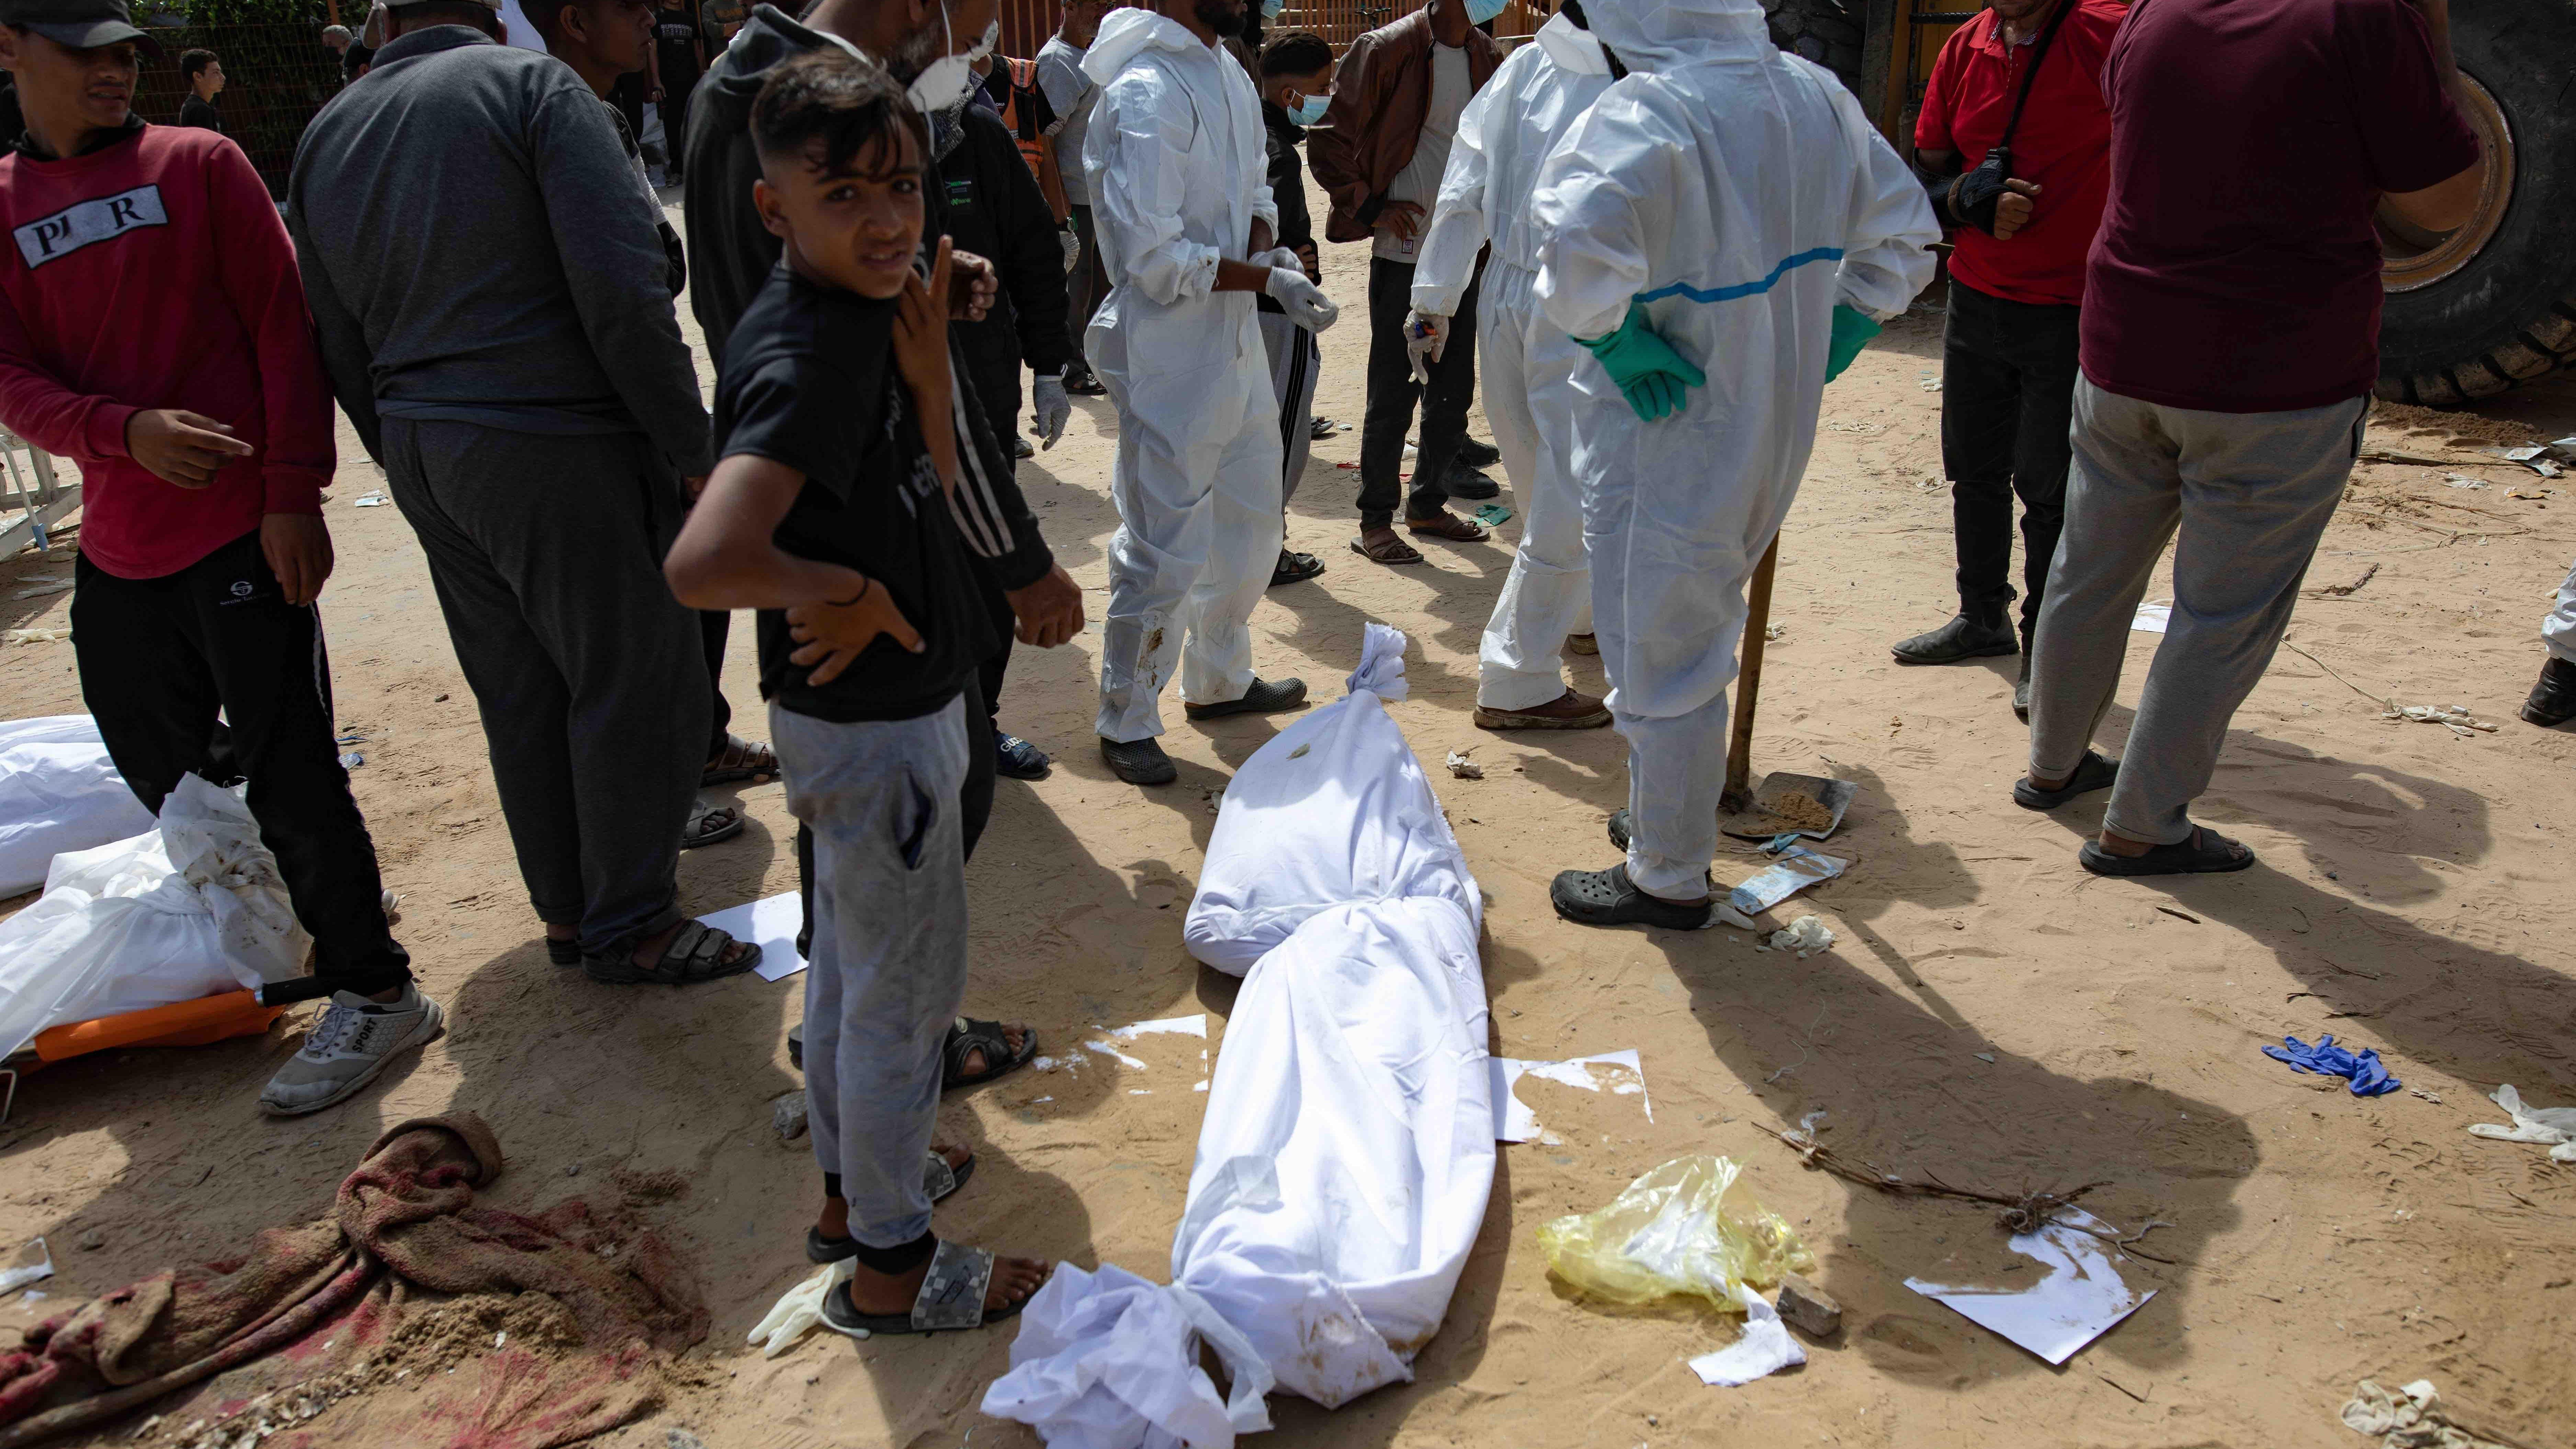 흰 천에 감싸진 채 나세르 병원 부지 바닥에 놓인 시신들의 모습